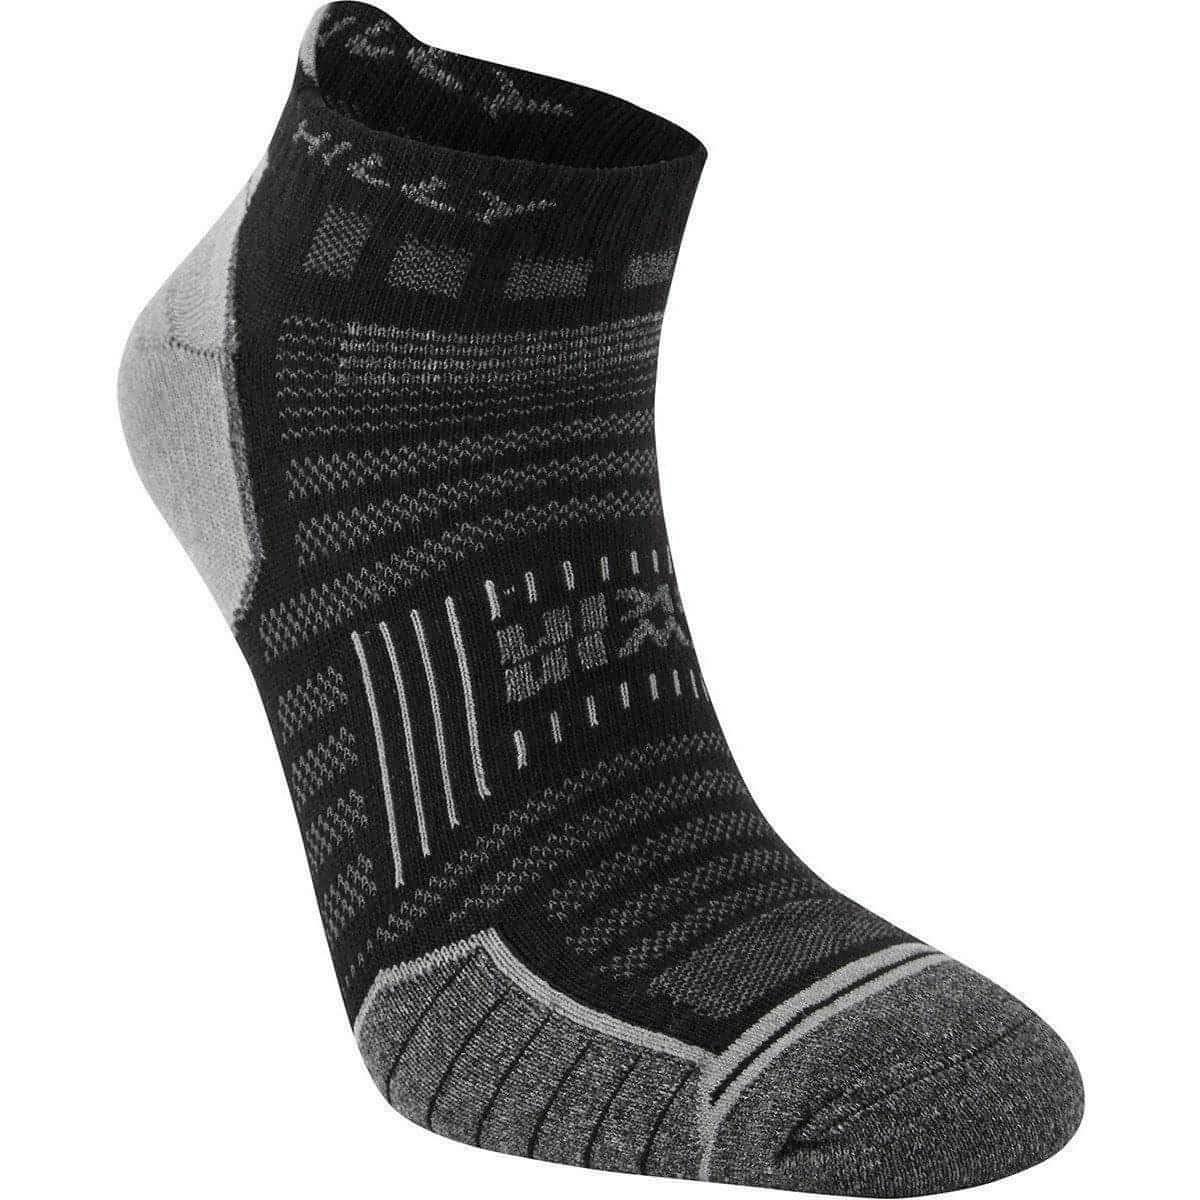 Hilly Twin Skin Socklet Running Socks - Black - Start Fitness